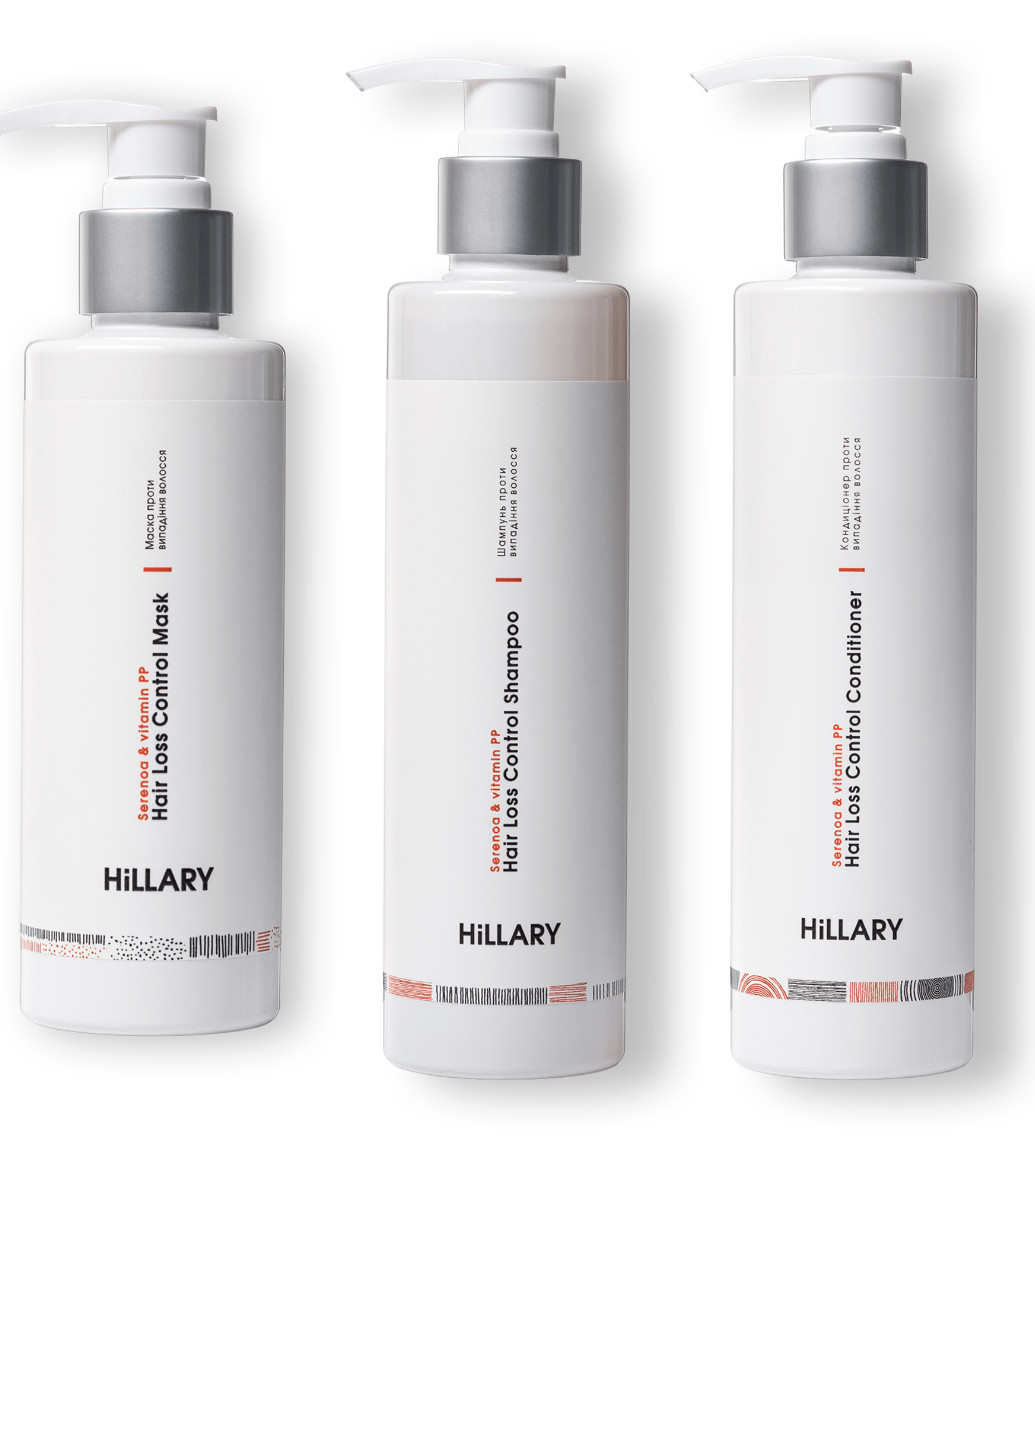 Комплекс проти випадіння волосся Serenoa & РР Hair Loss Control Hillary (256517435)